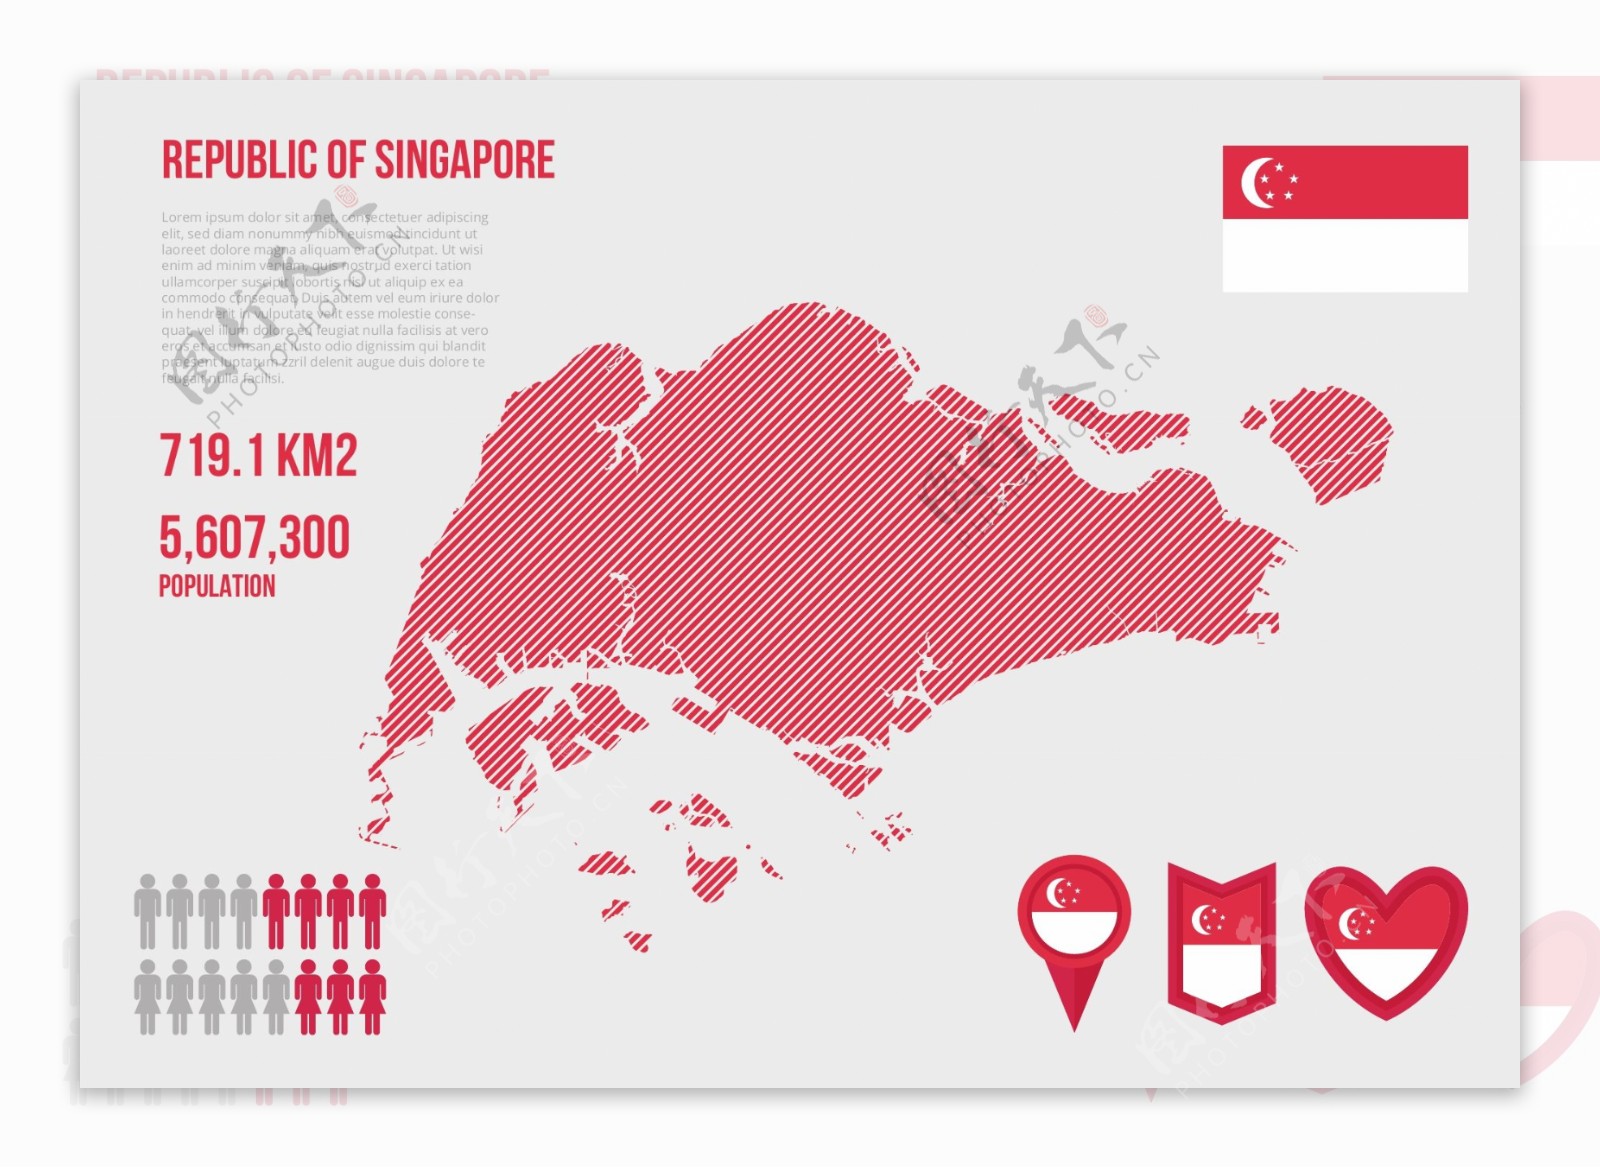 新加坡地图